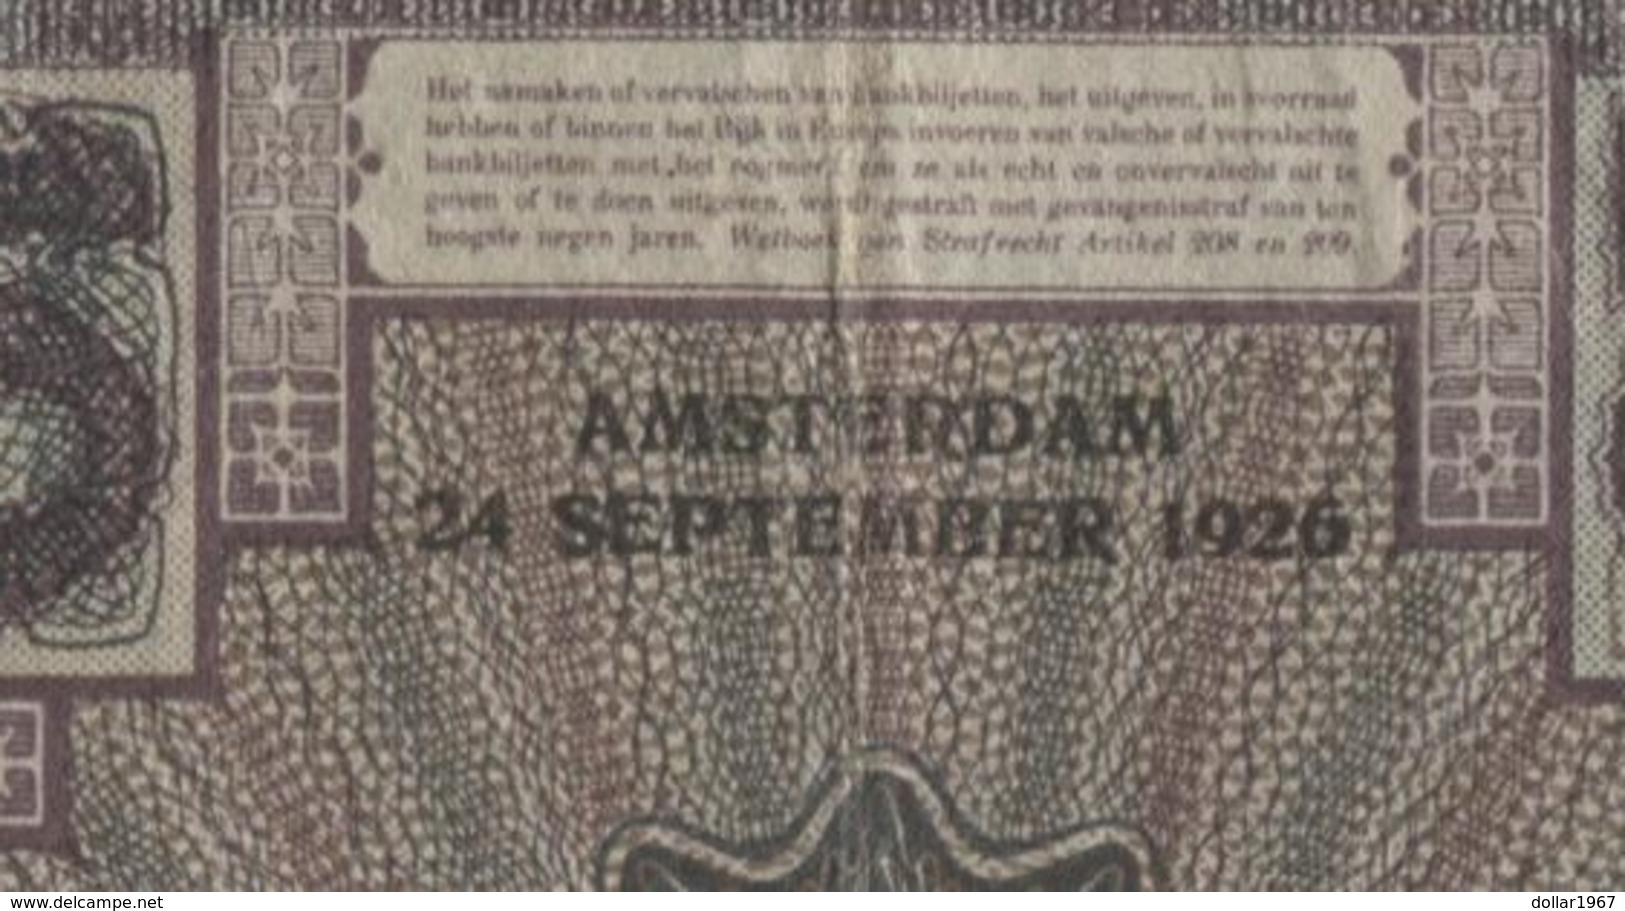 Netherlands  10 Gulden 1-3-1924 - 6-5-1932 - NR JV 007441 - 28 1c - See The 2 Scans For Condition.(Originalscan ) - 10 Gulden